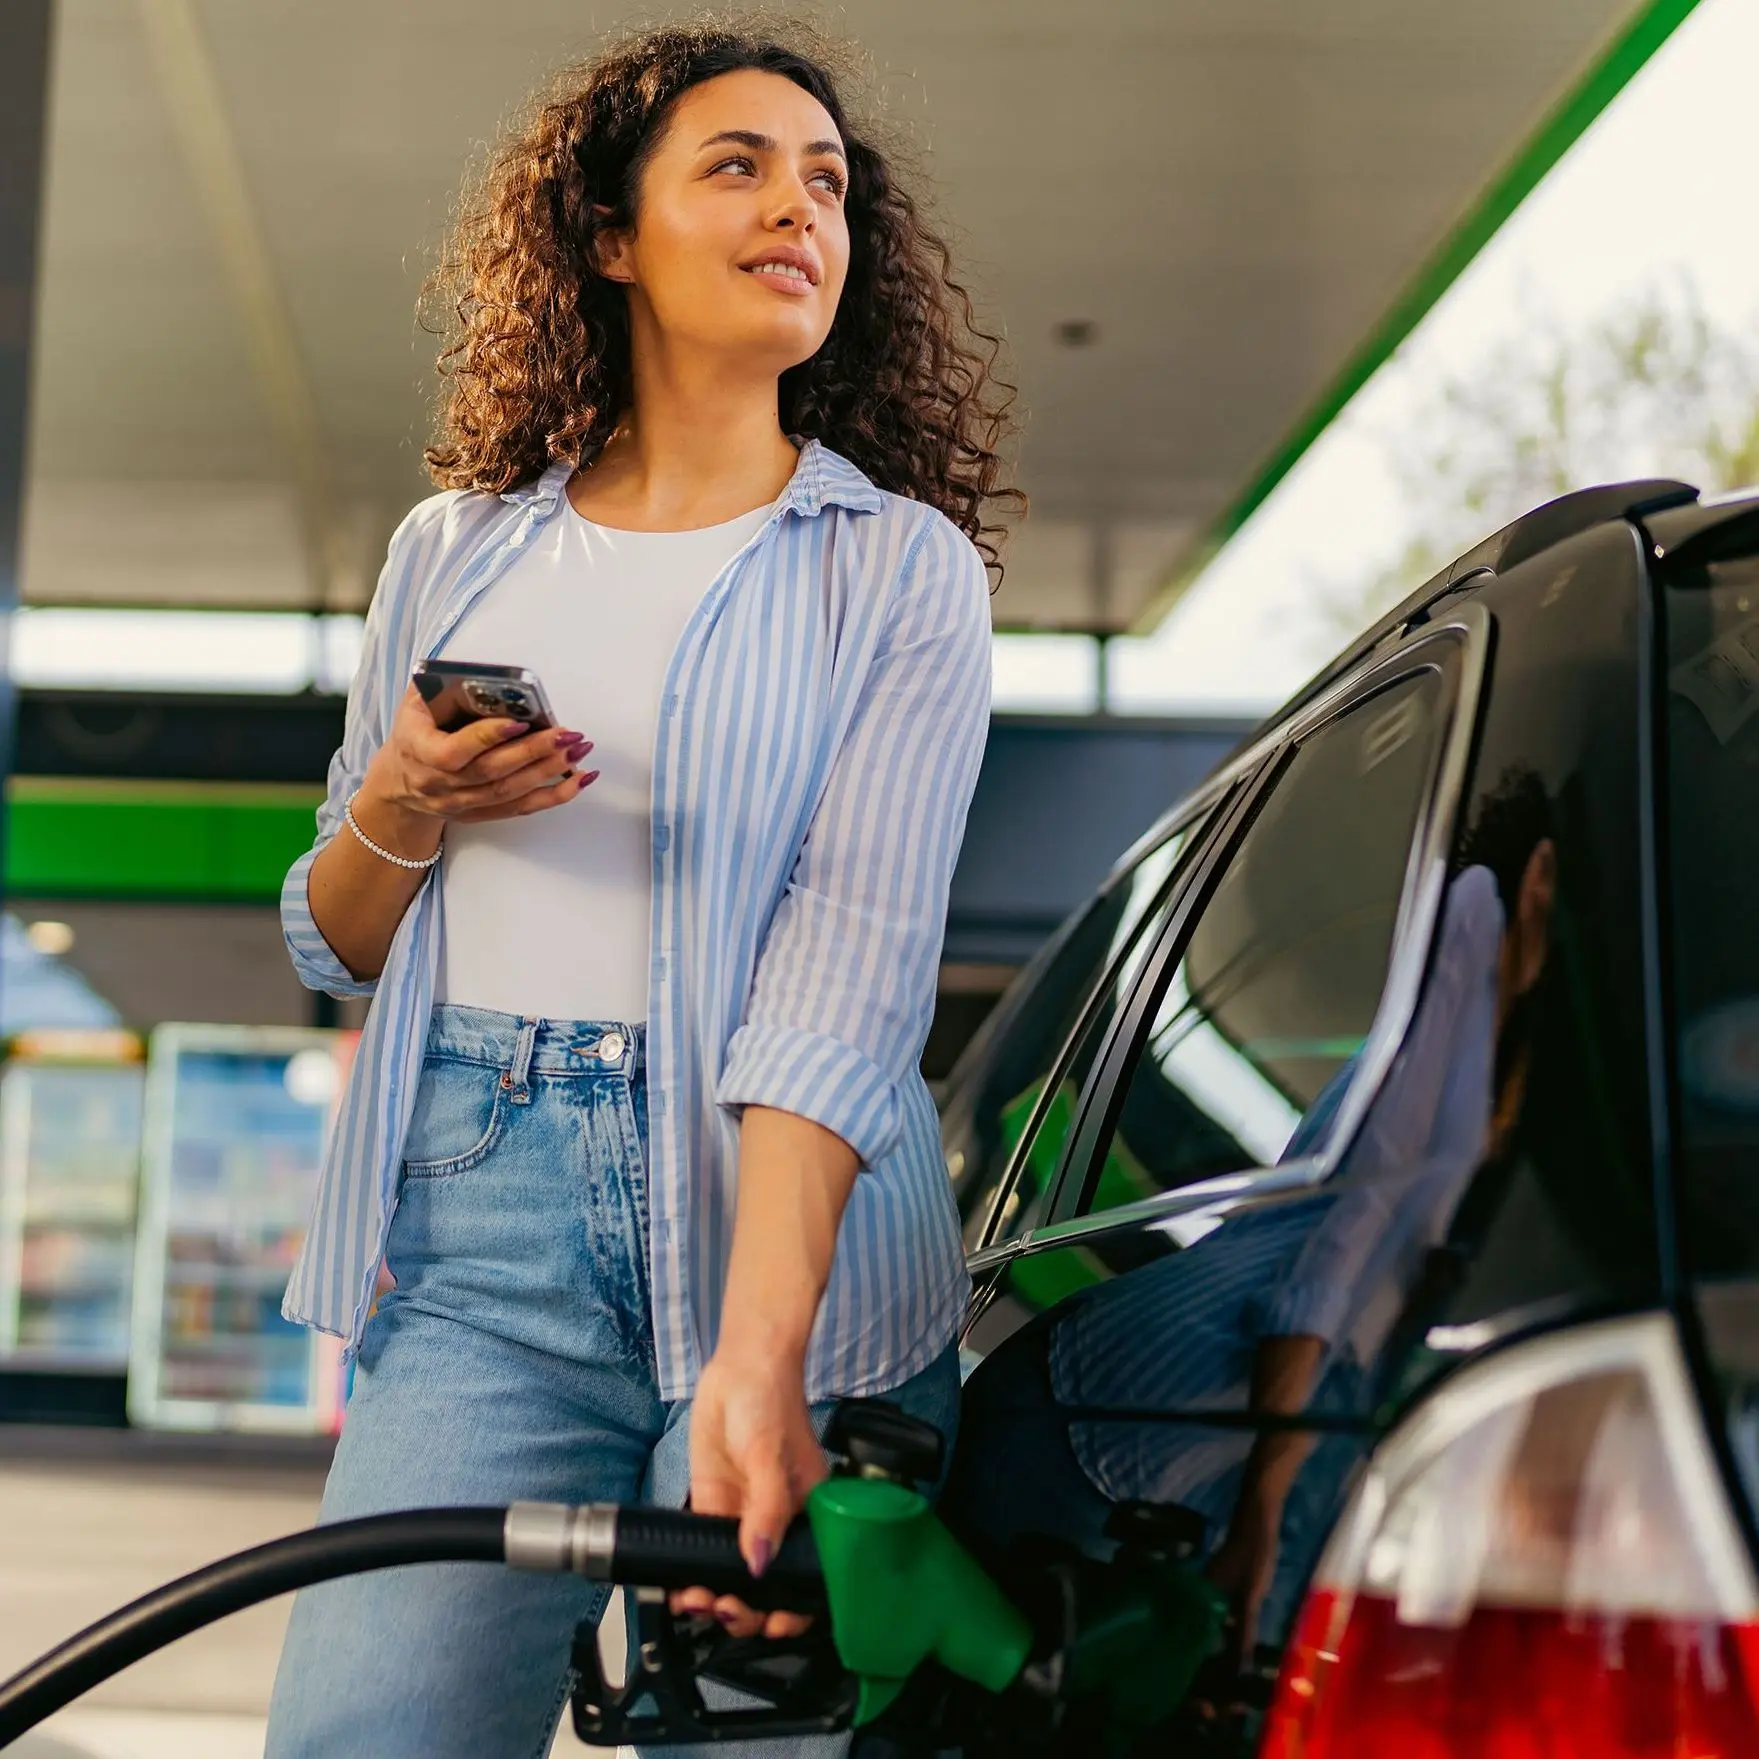 Eine Frau tankt an einer Tankstellenzapfsäule Benzin. Sie hält ein Smartphone in der Hand und schaut nach oben auf die Preistafel. 